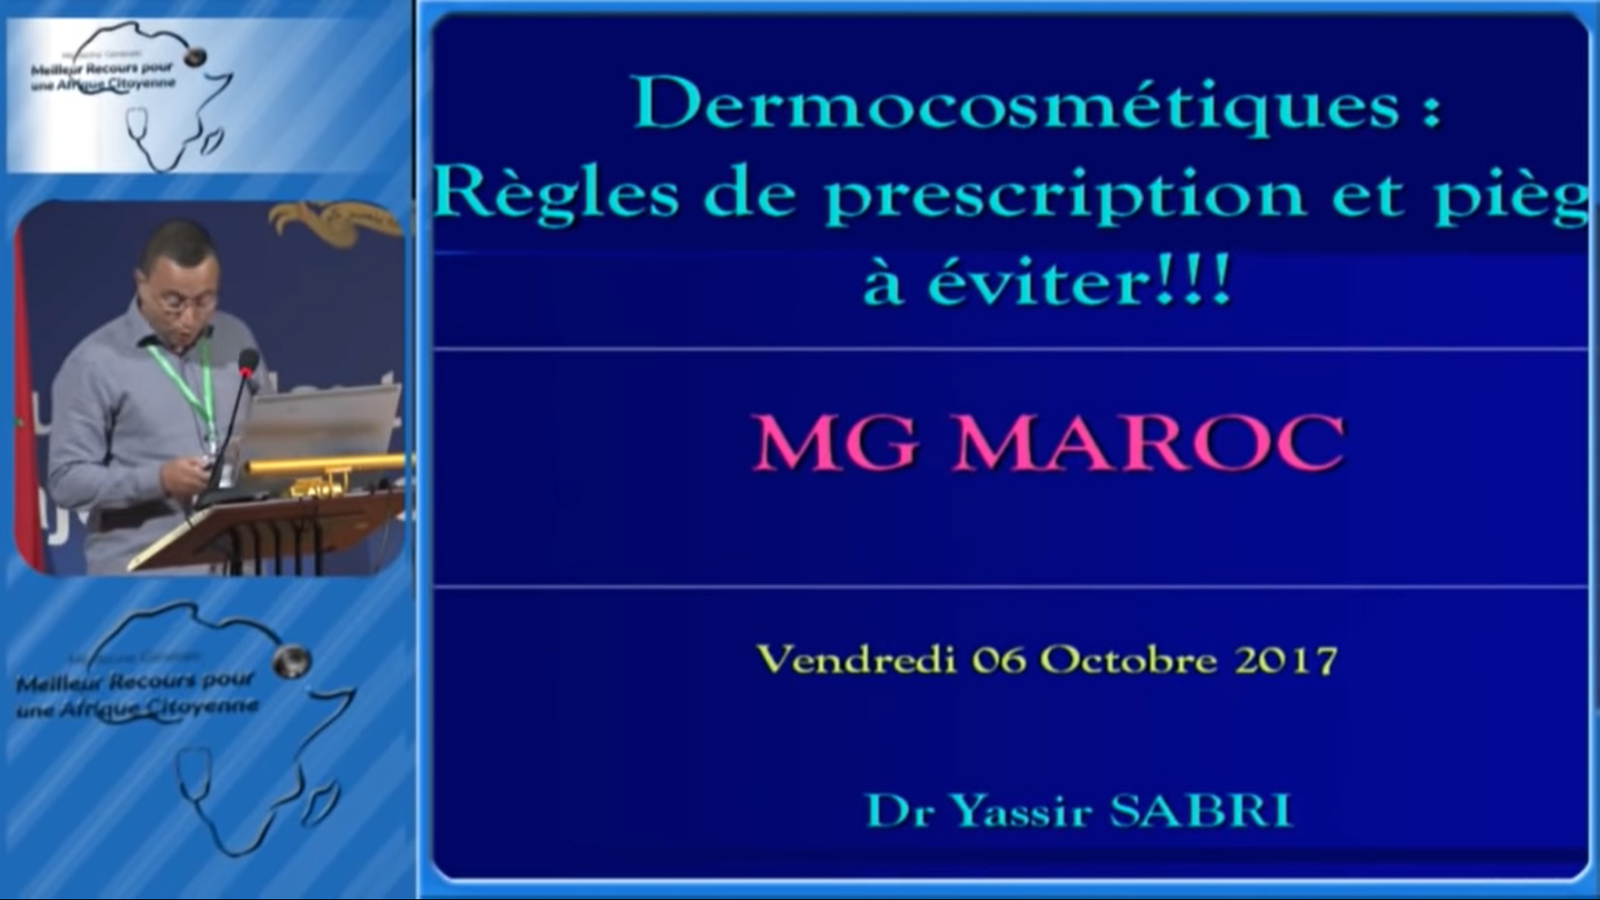 Dr. SABRI YASSIR : Dermocosmétiques : Régles de Prescription et piéges à éviter